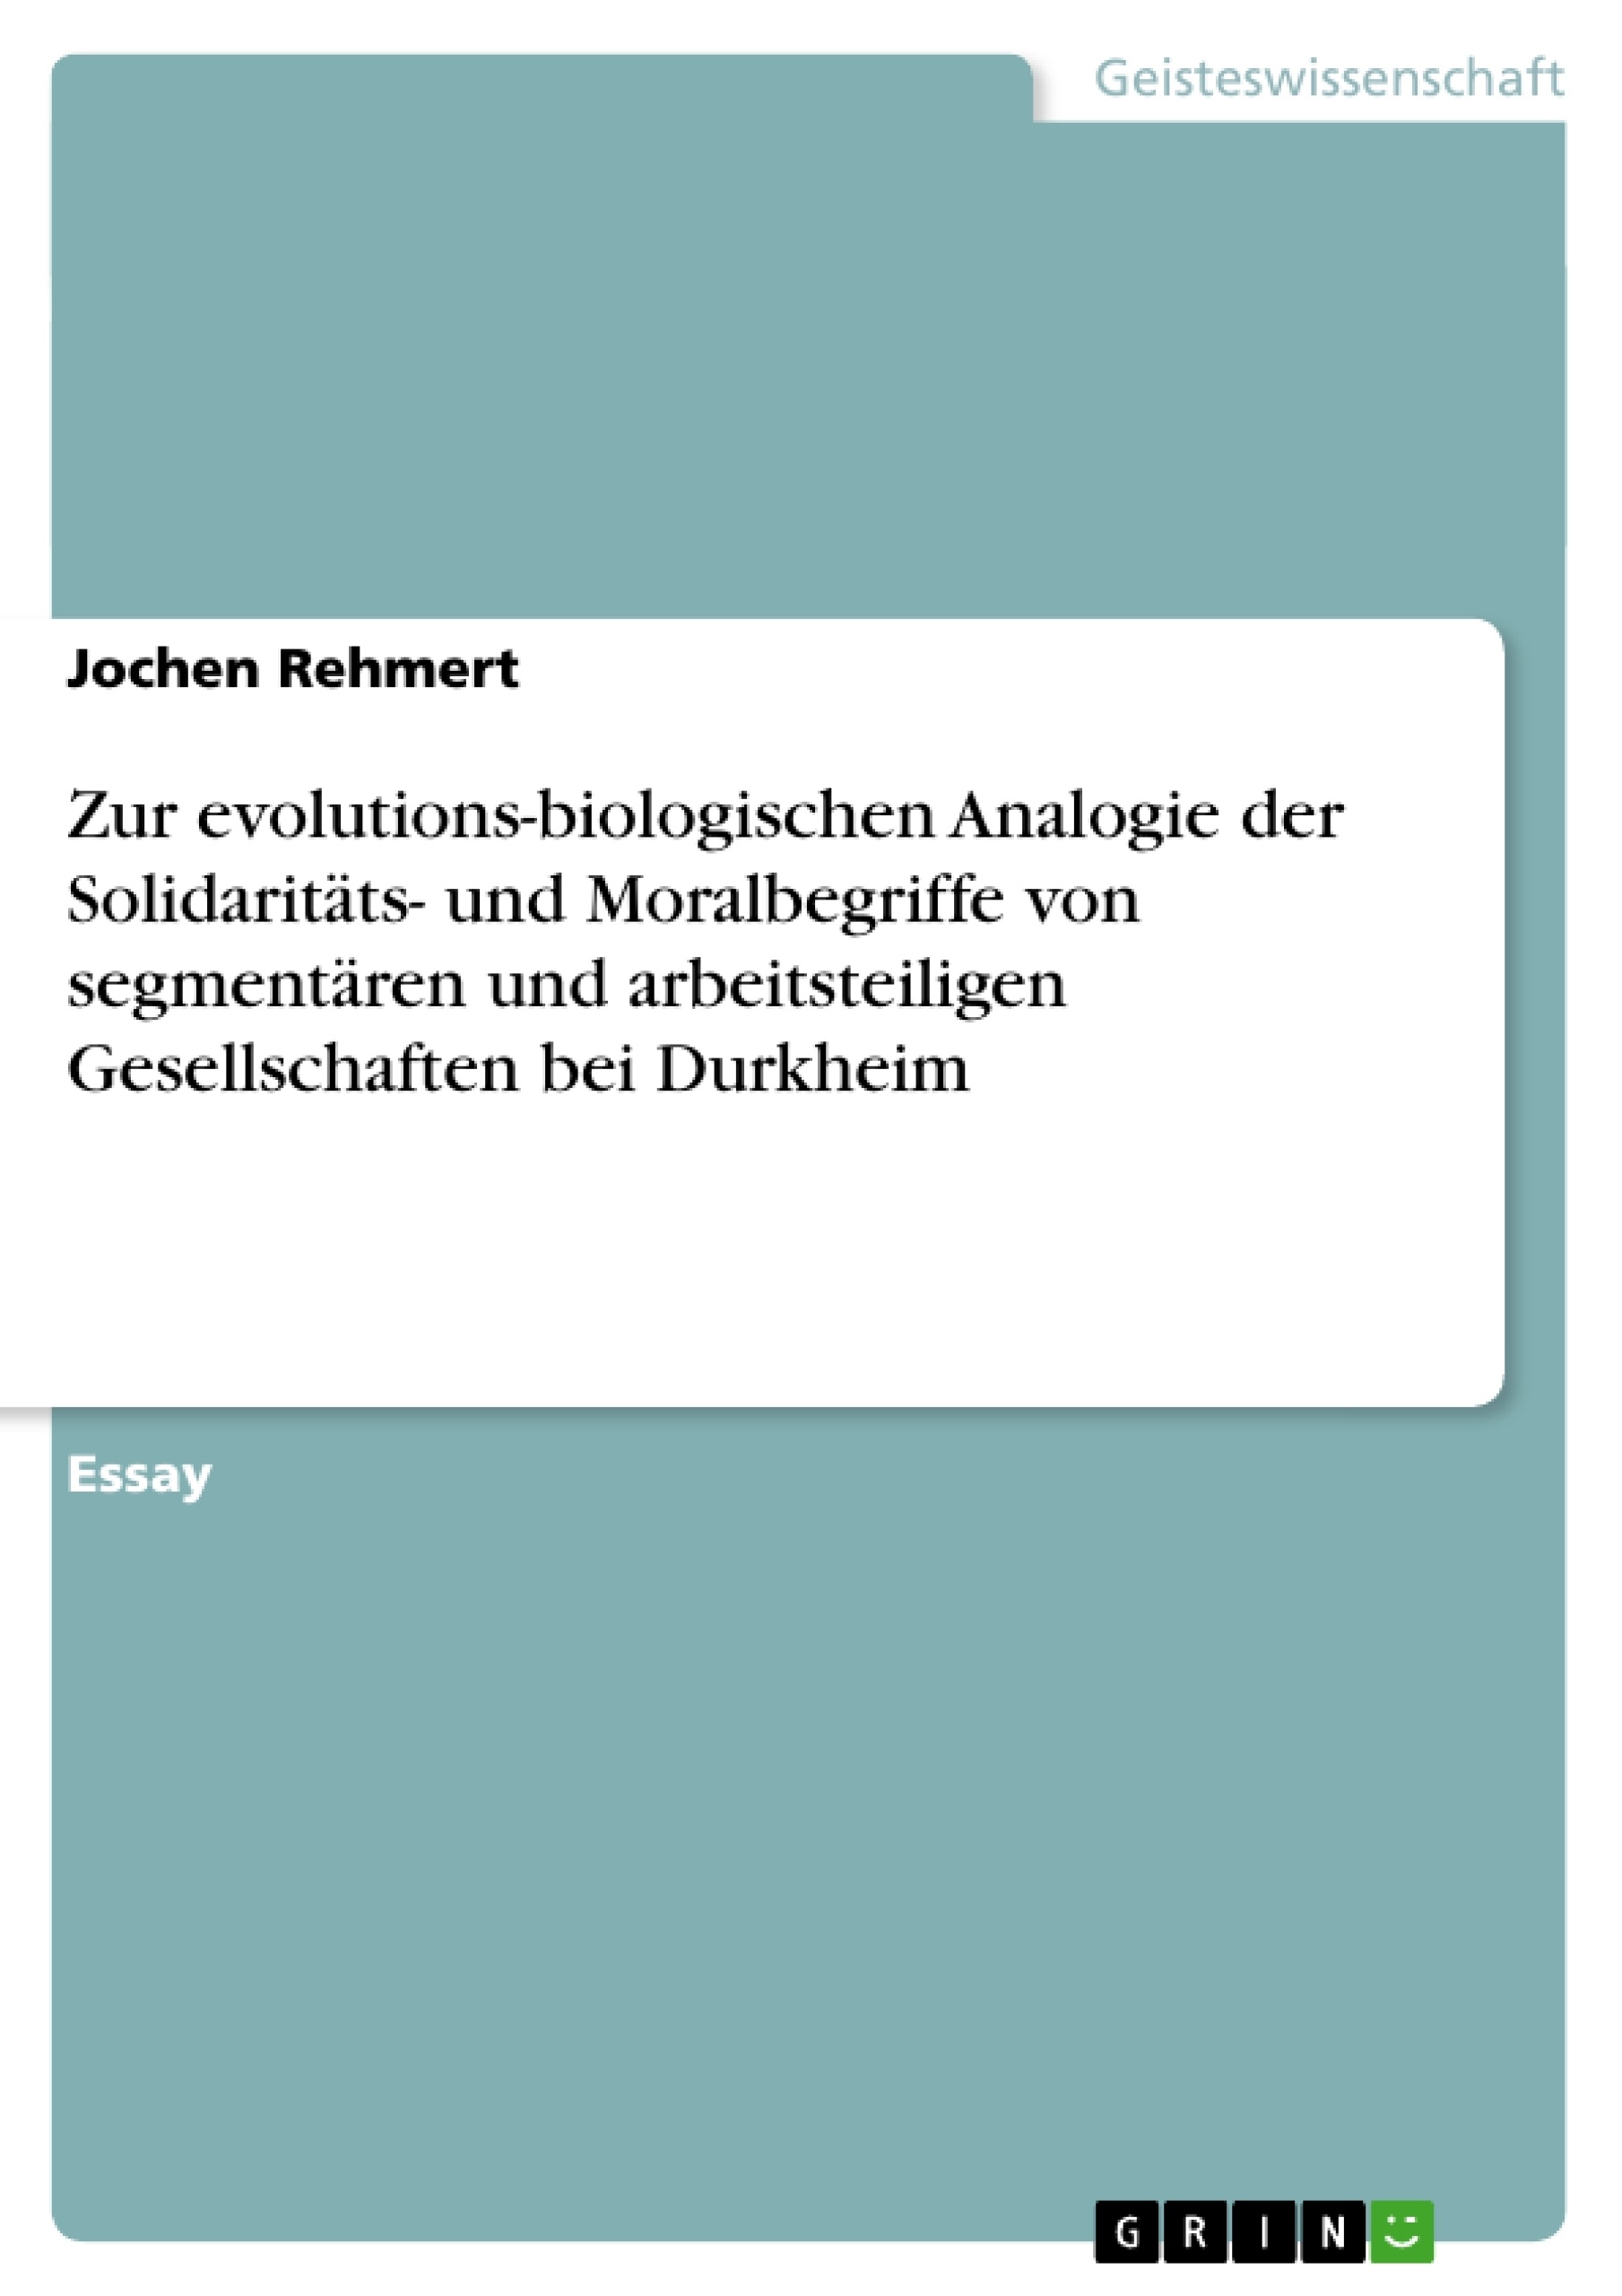 Titre: Zur evolutions-biologischen Analogie der Solidaritäts- und Moralbegriffe von segmentären und arbeitsteiligen Gesellschaften bei Durkheim